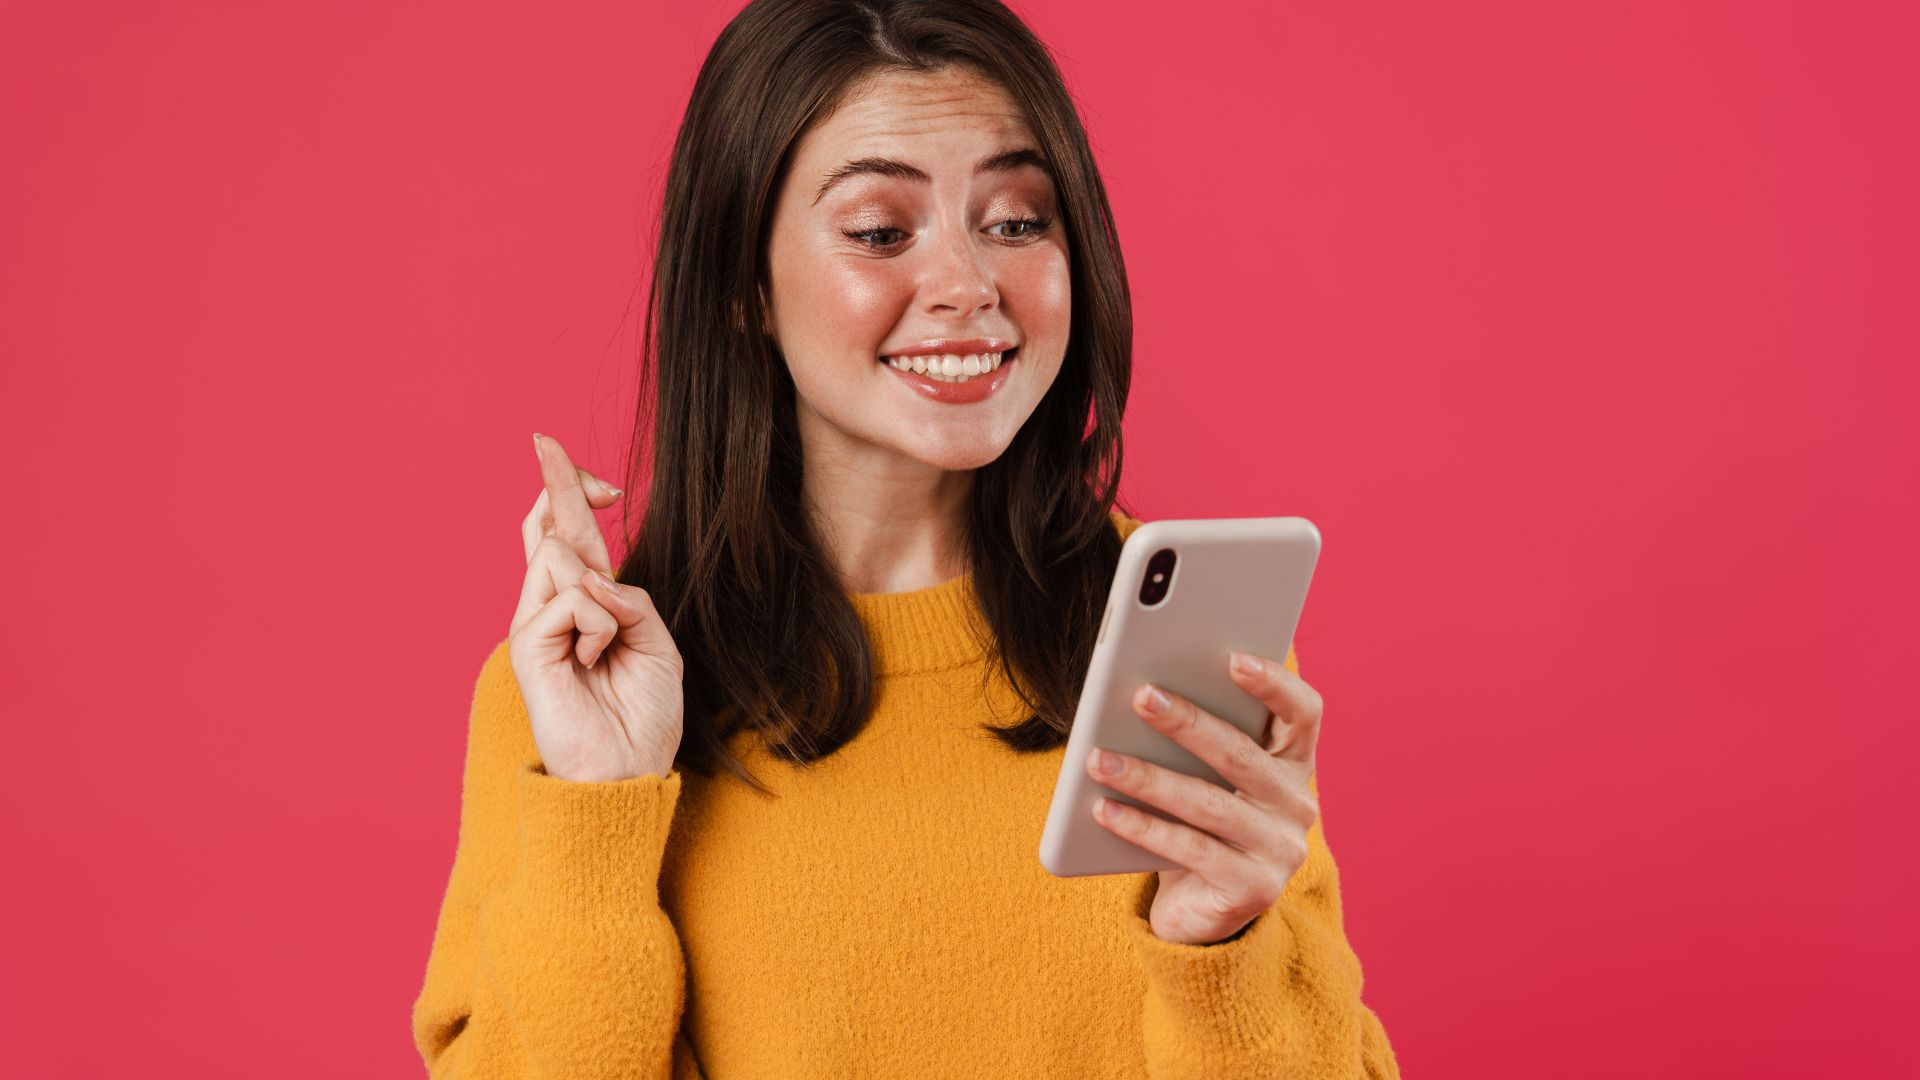 Imagem de fundo vermelho nela está uma mulher de cabelos médios e blusa amarela de frio segurando um celular com uma das mãos e na outra fazendo um sinal cruzando os dedos para algo dar certo.